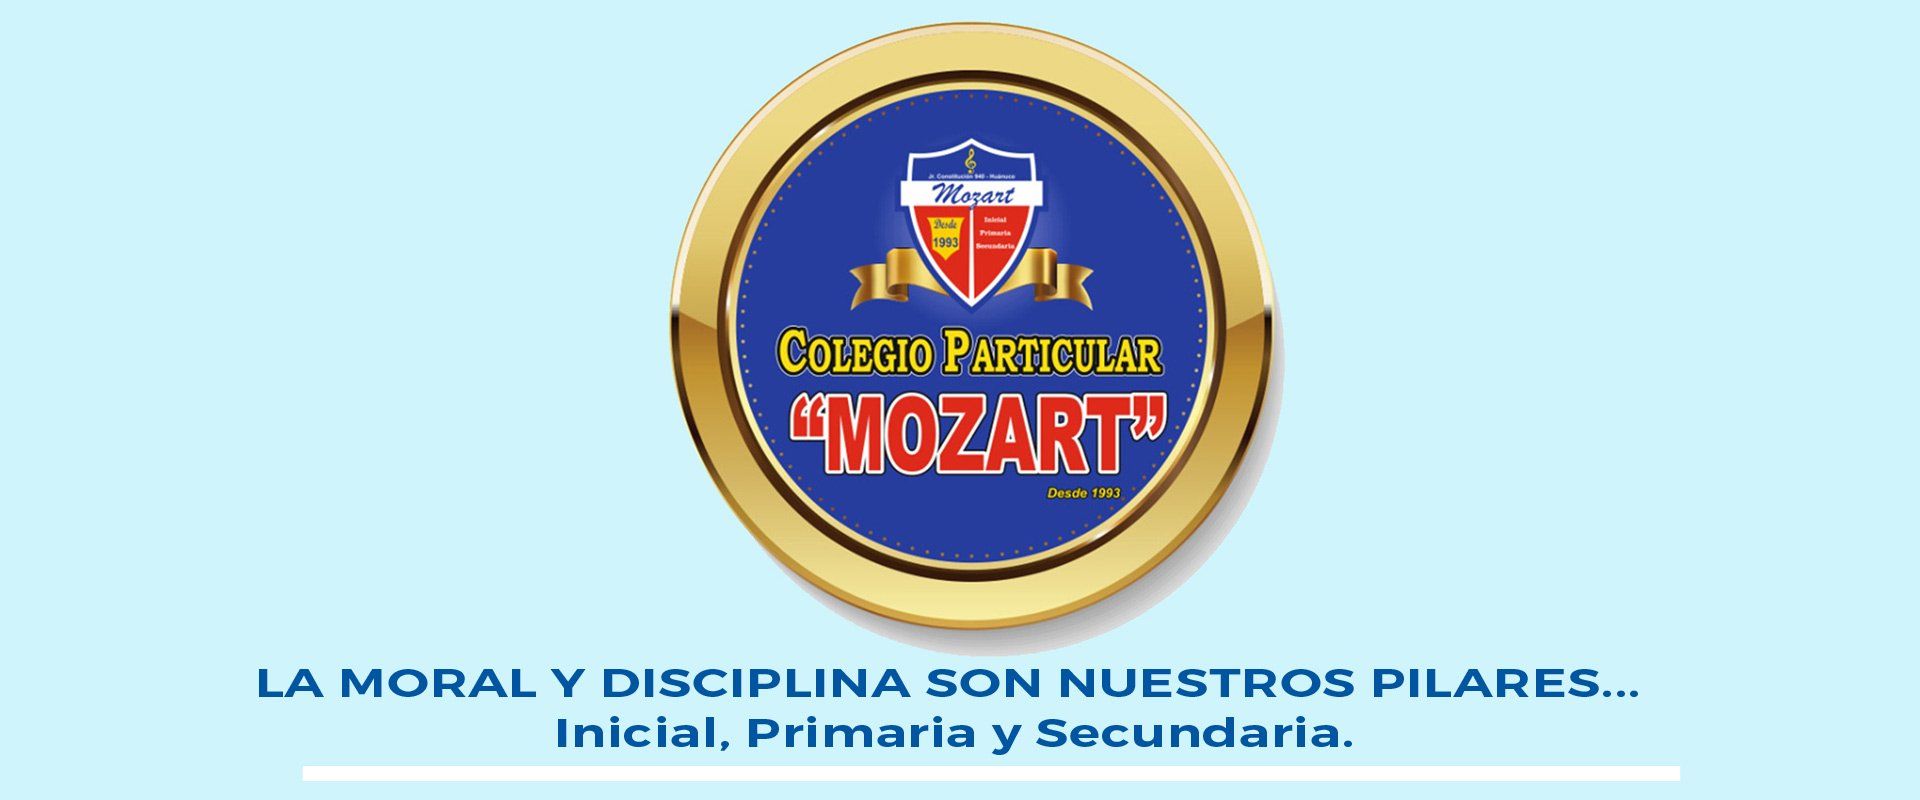 Colegio Particular “Amadeus Mozart”, colegio particular.